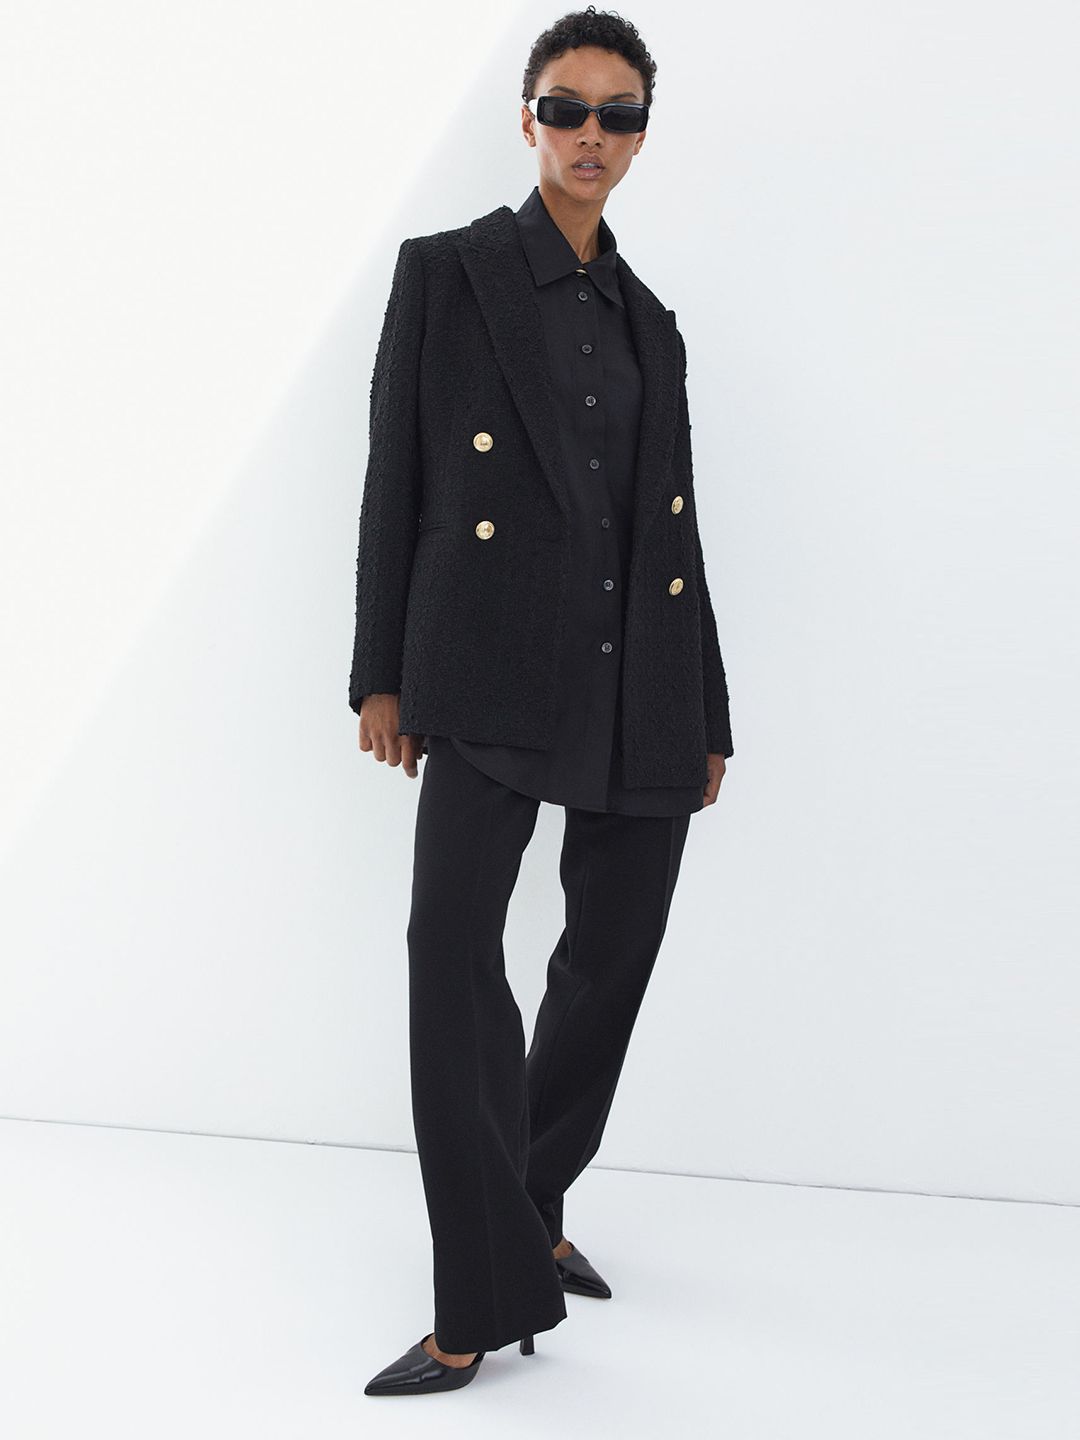 H&M Women Black Textured-Weave Blazer Price in India